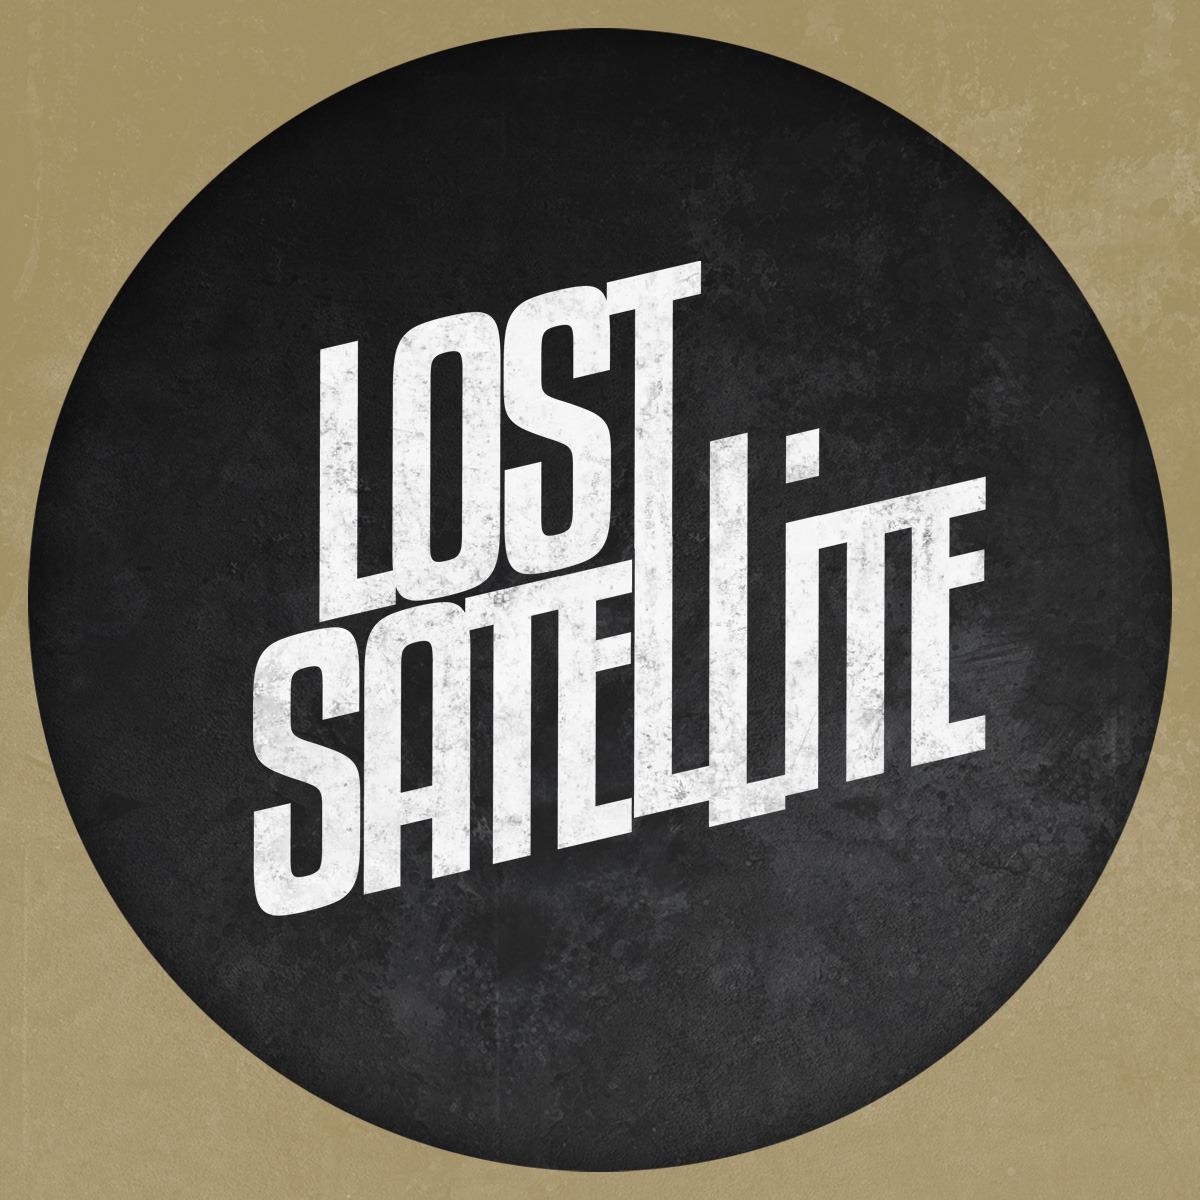 Lost Satellite